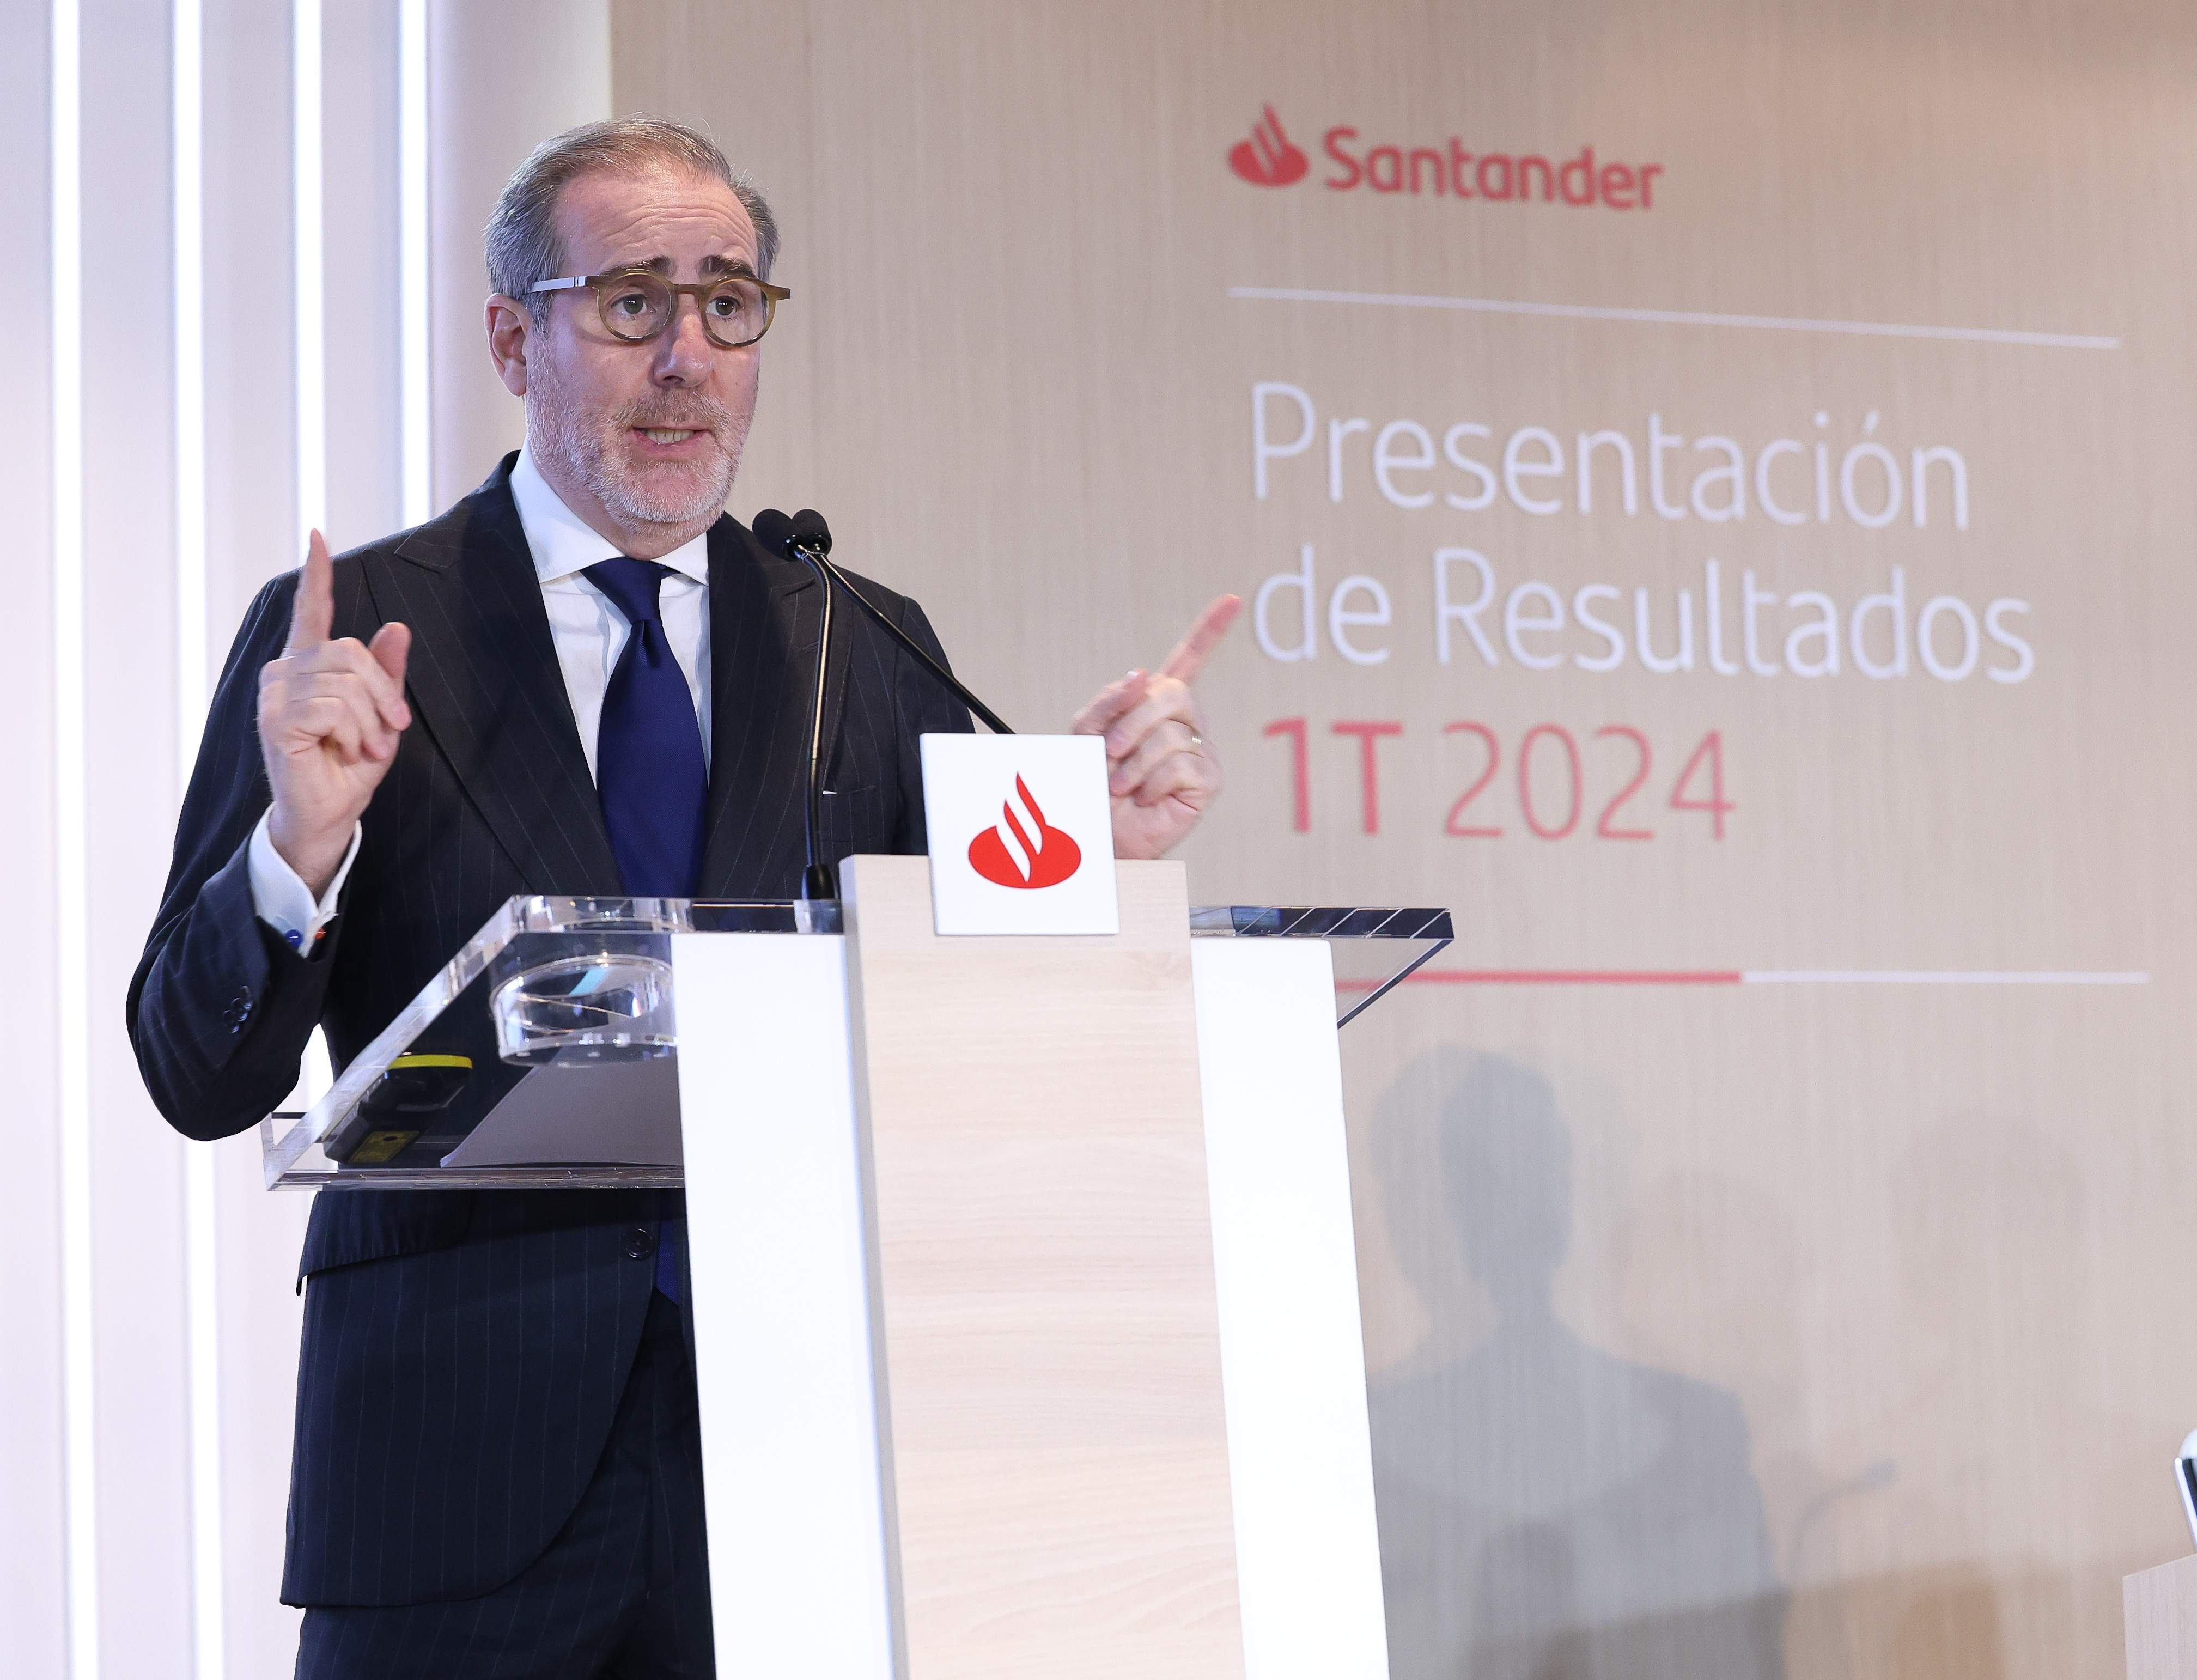 España tira de los resultados de Santander y crece "31 meses consecutivos" en clientes